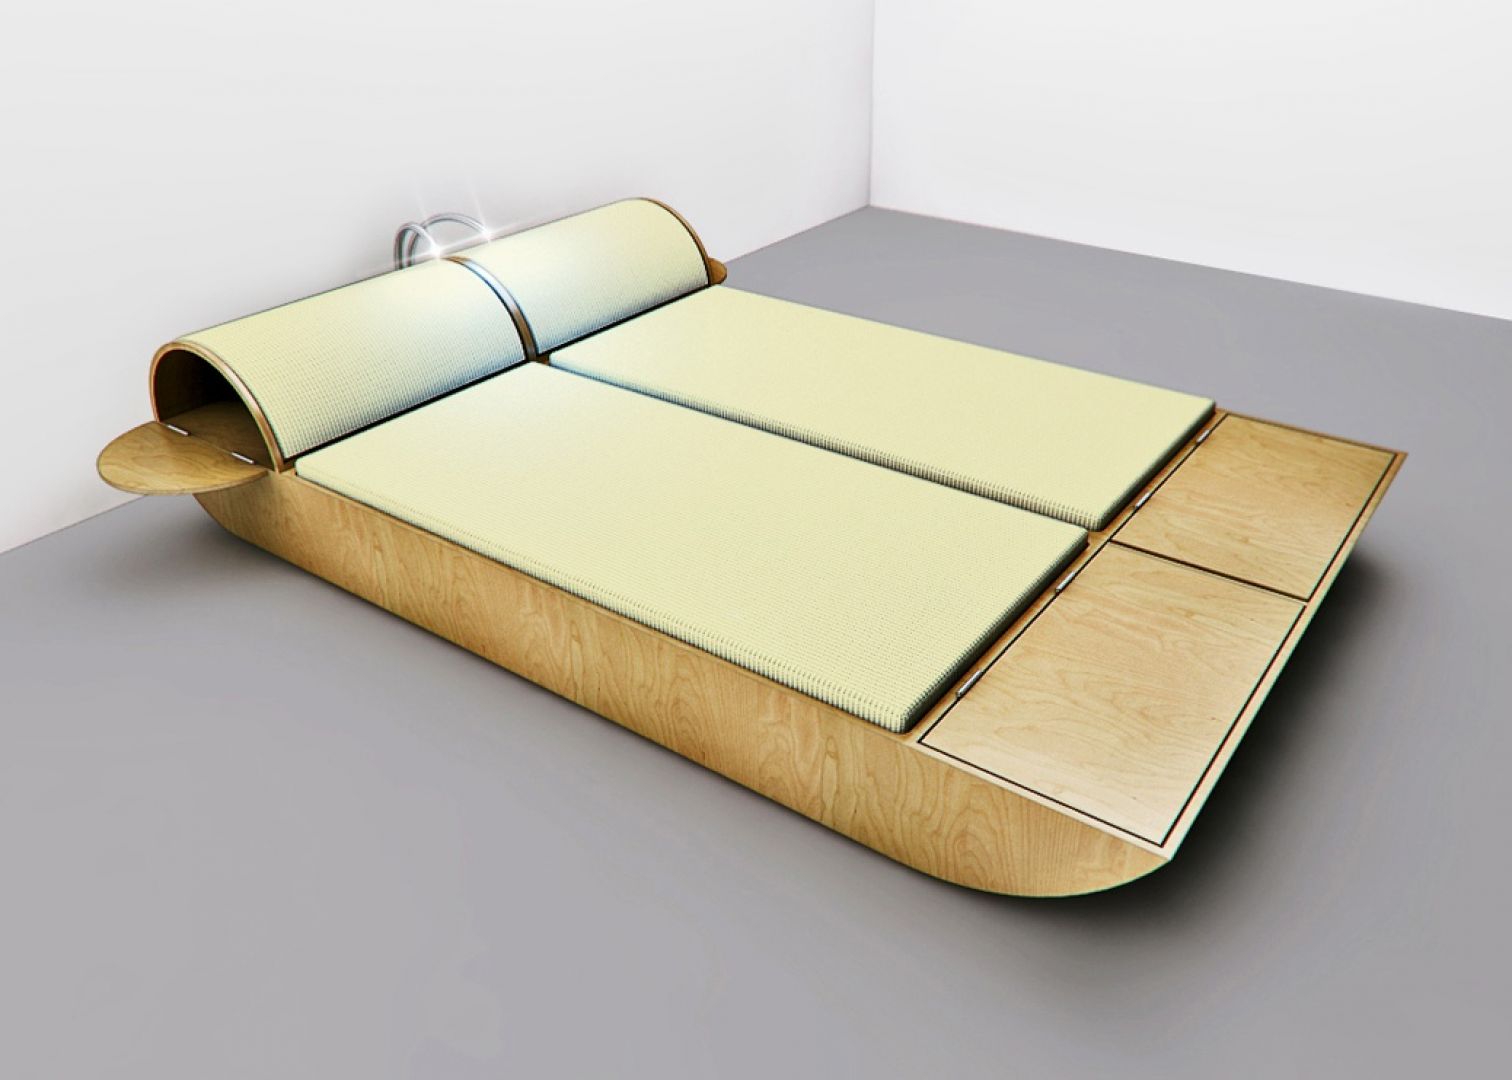 Nowoczesne łóżko z pojemnikami w dolnej jego części, a także w zagłówku. W zagłówku zamontowano malutkie lampki, umożliwiające wygodne czytanie w łóżku. Projekt Tomasza Wagnera
Fot. Archiwum 